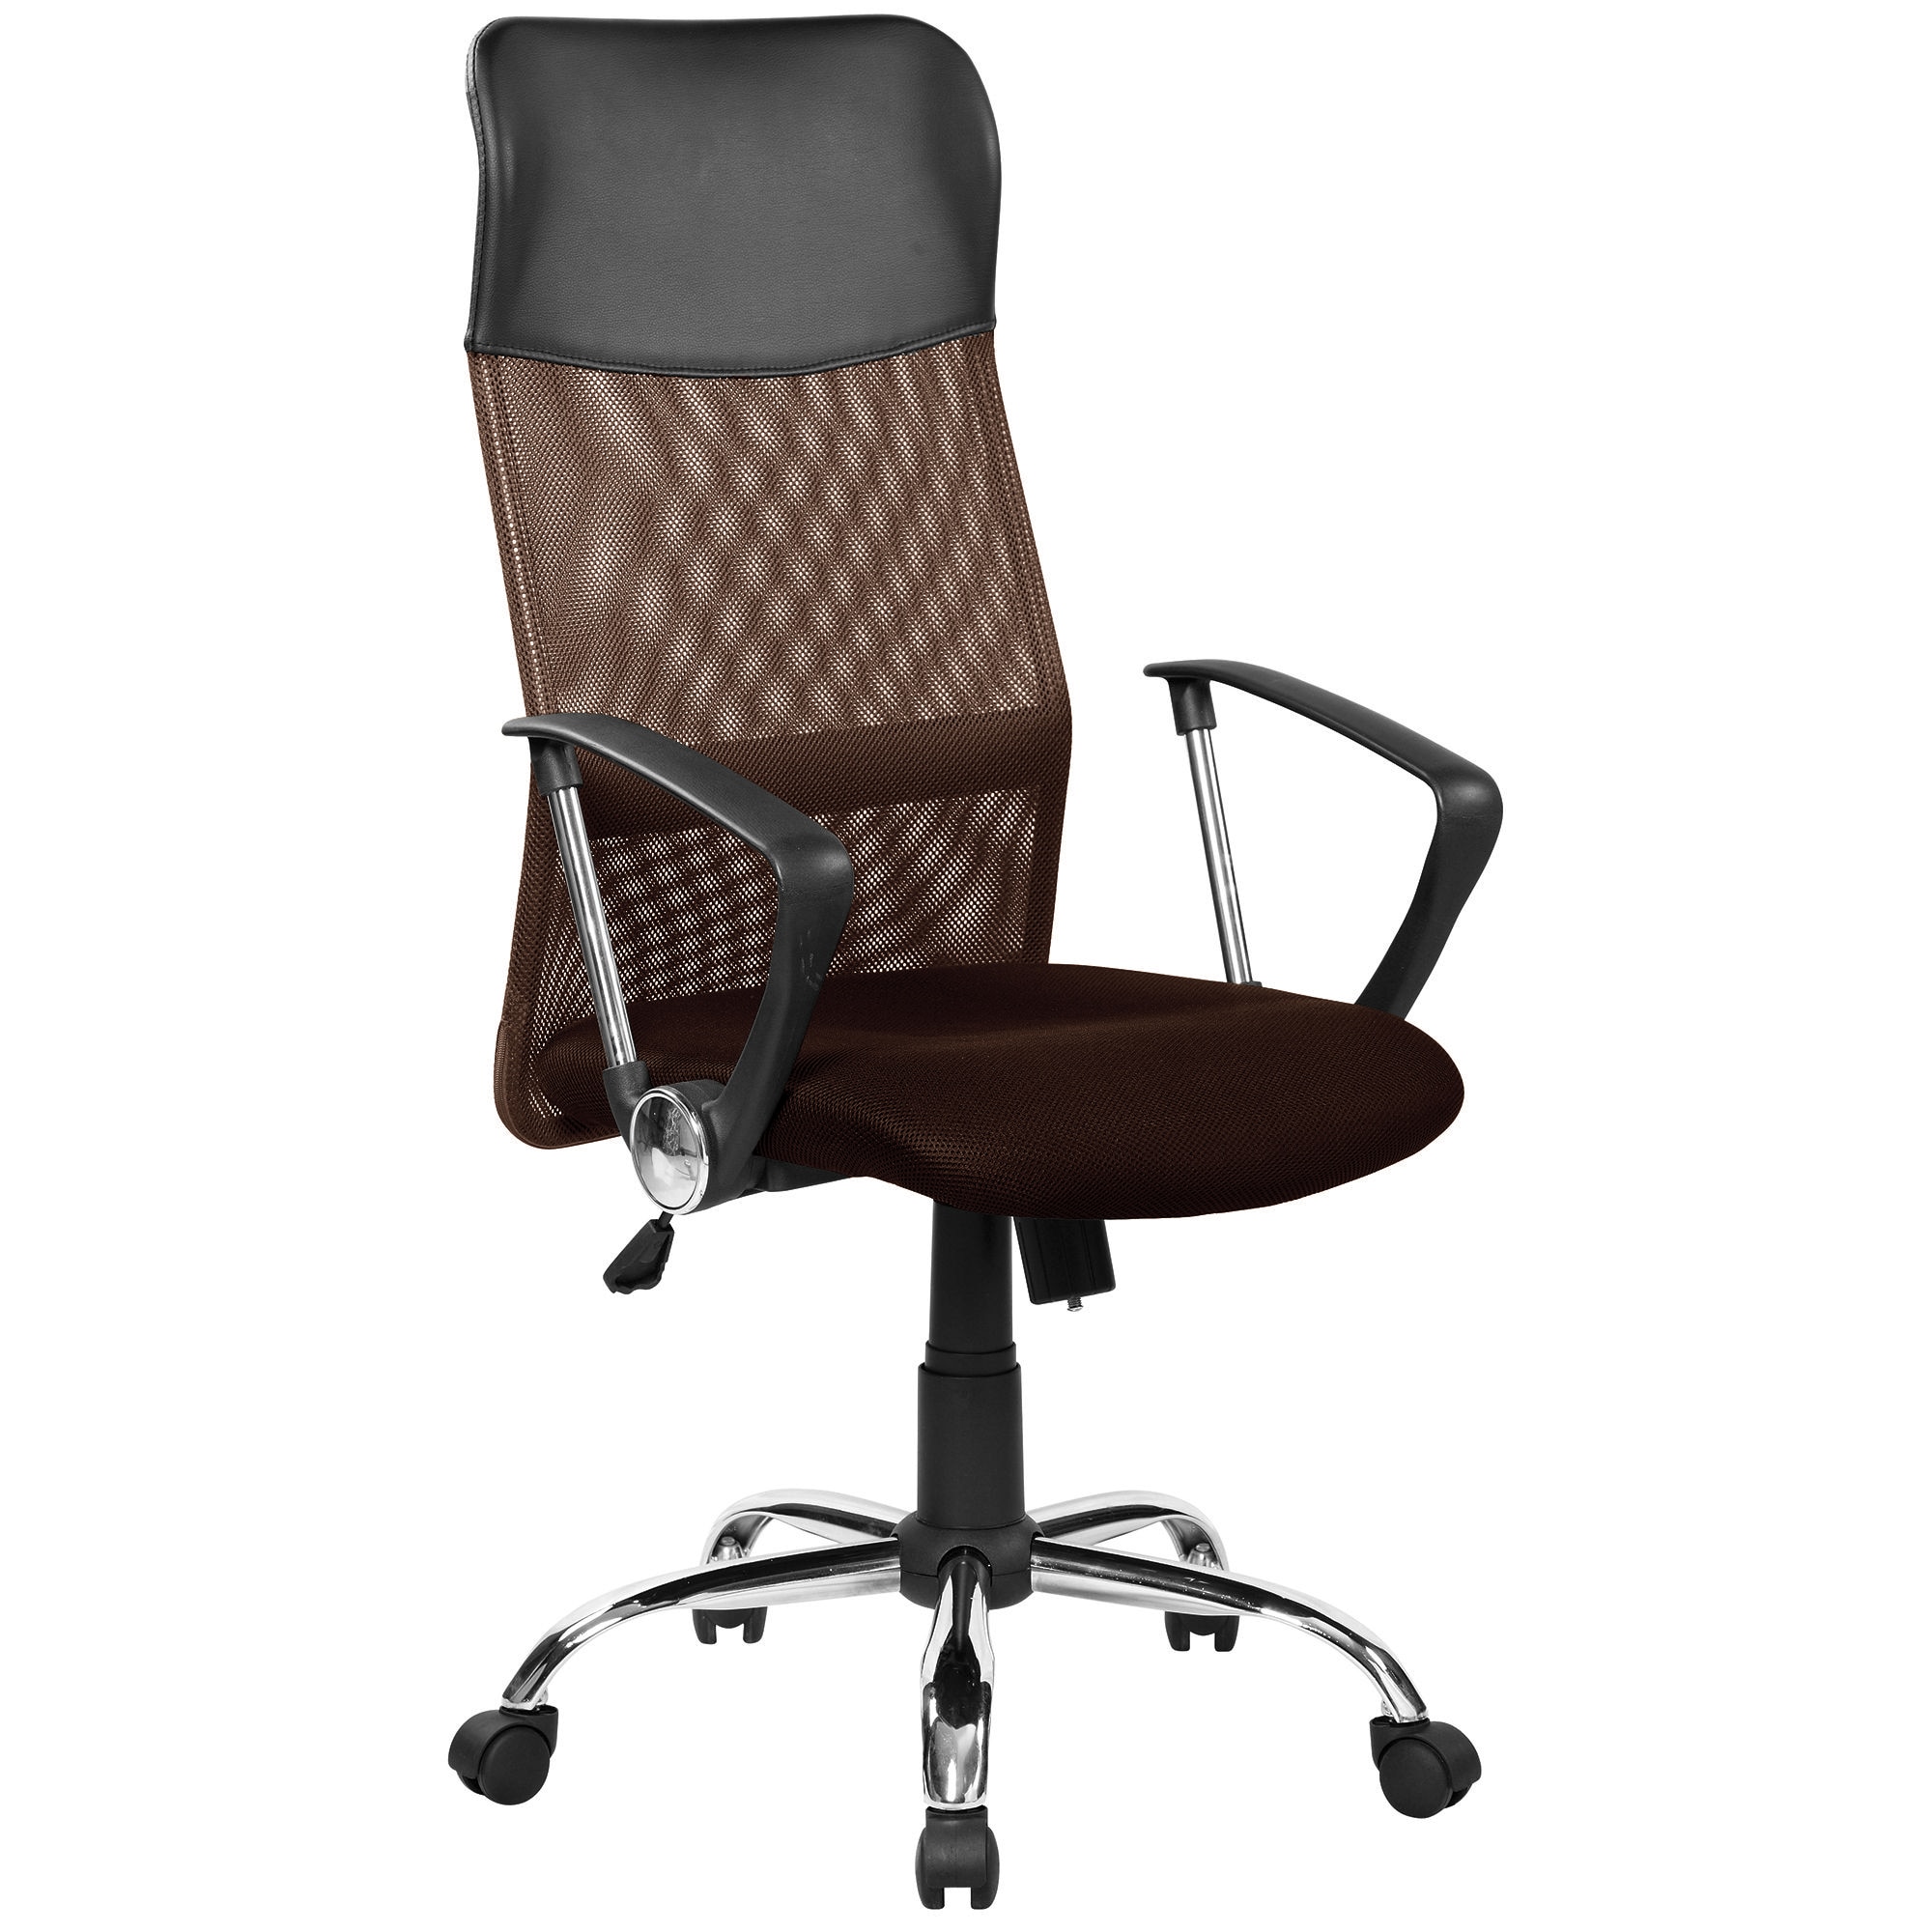 Офисное кресло купить в москве inmyspace ru. Кресло руководителя FX-139. Кресло direct 3012h. Кресло офисное с  стандарт BIFMA 5,1.